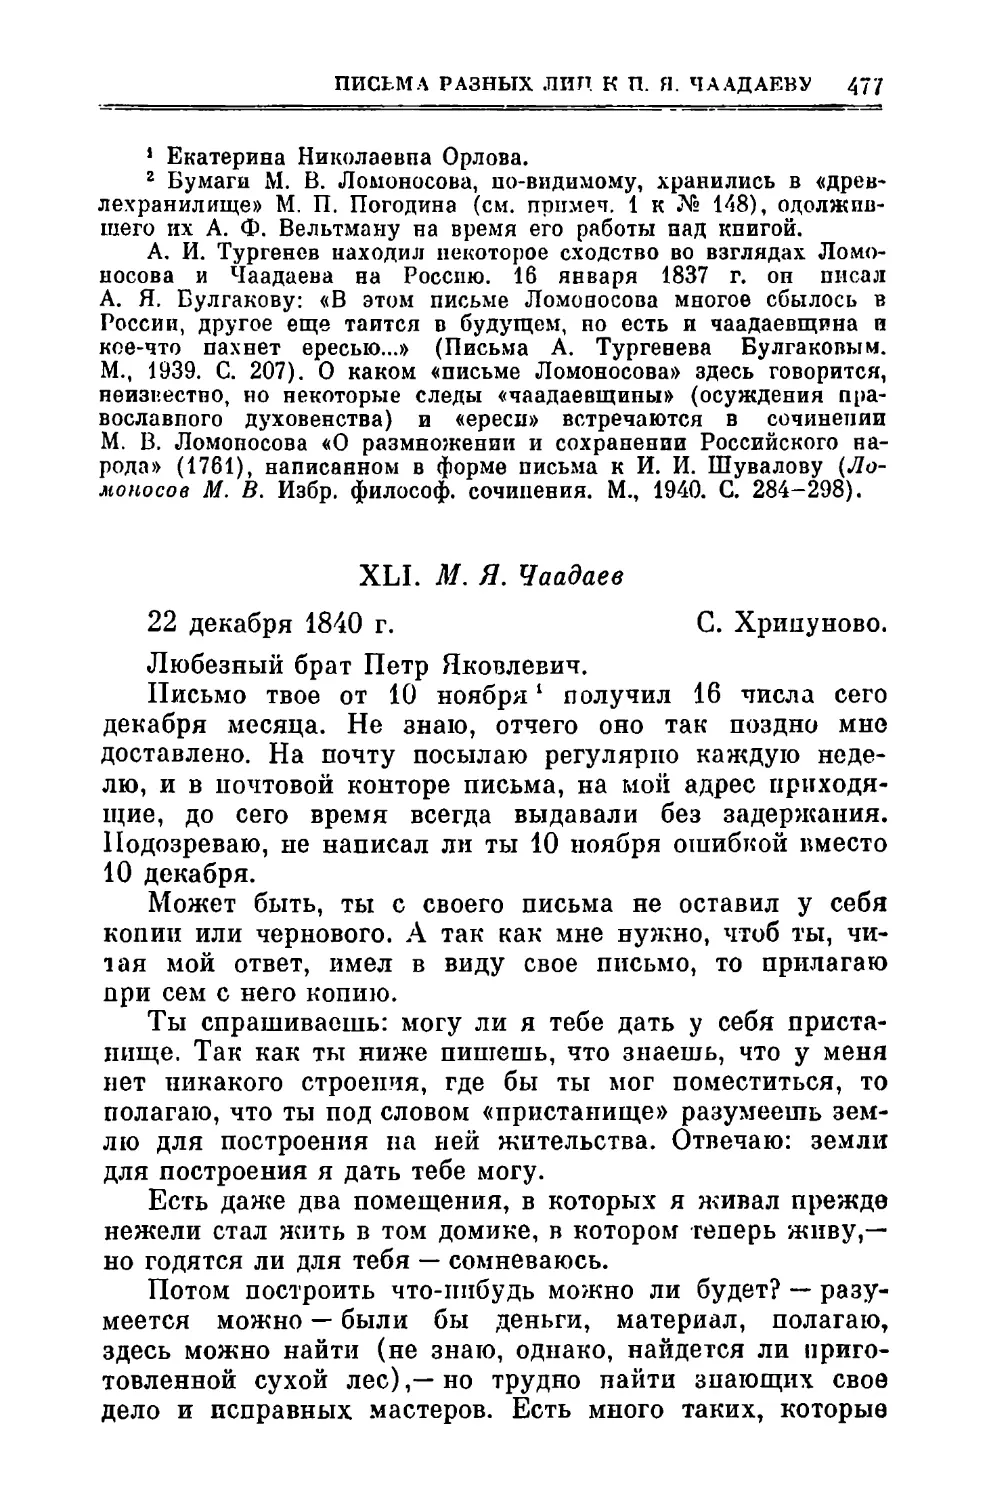 XLI. Чаадаев М.Я. 22.XII.1840